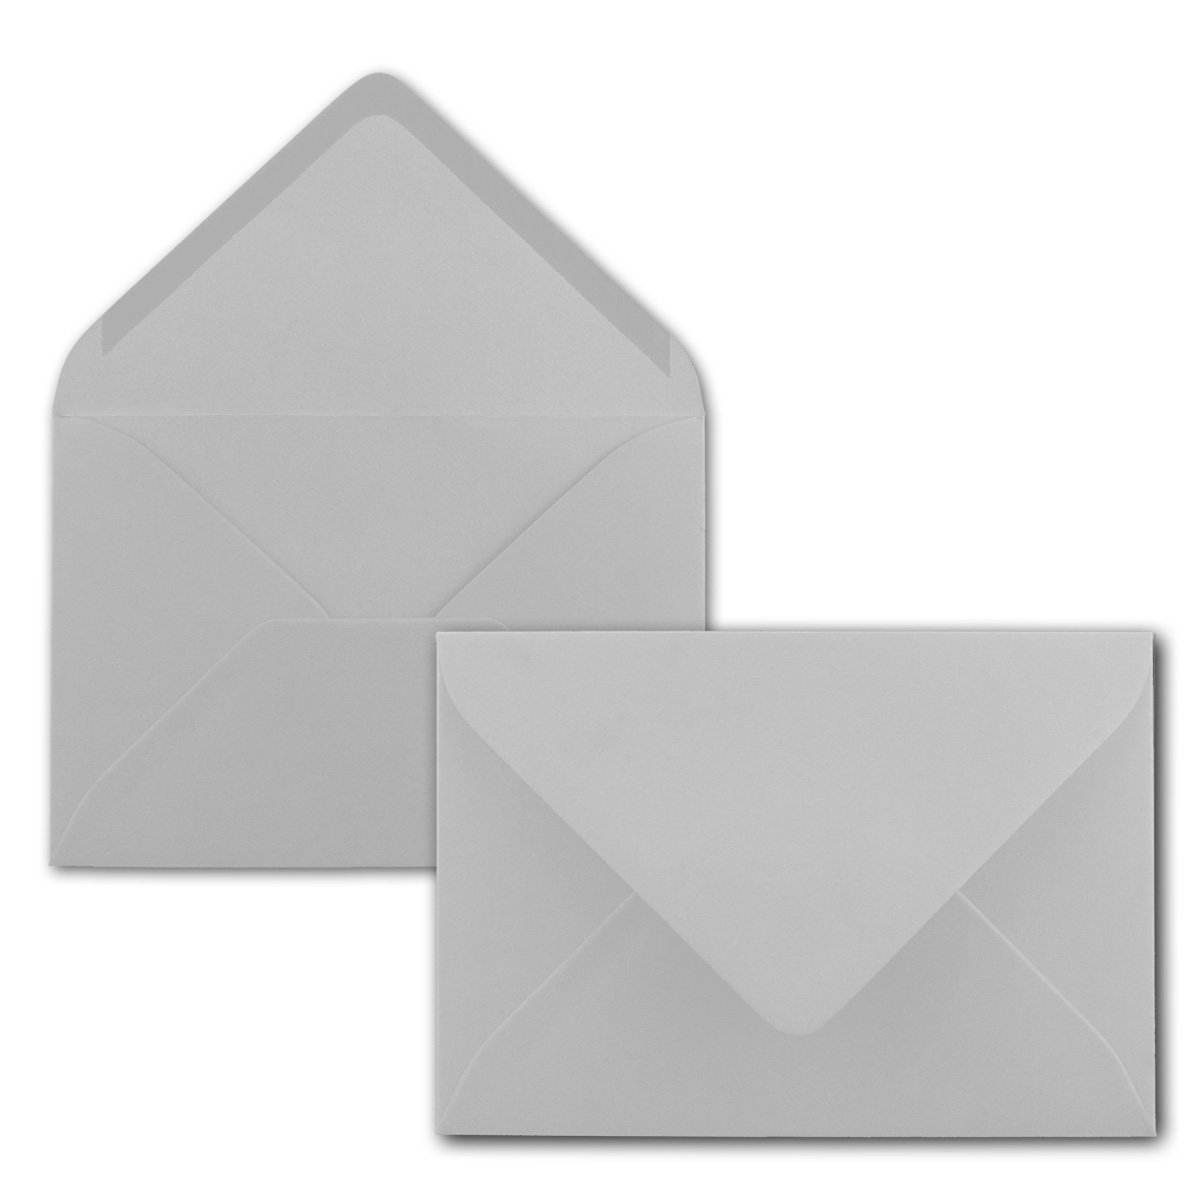 Briefumschläge in Hellgrau - 200 Stück - DIN C5 Kuverts 22,0 x 15,4 cm - Nassklebung ohne Fenster - Weihnachten, Grußkarten - Serie FarbenFroh